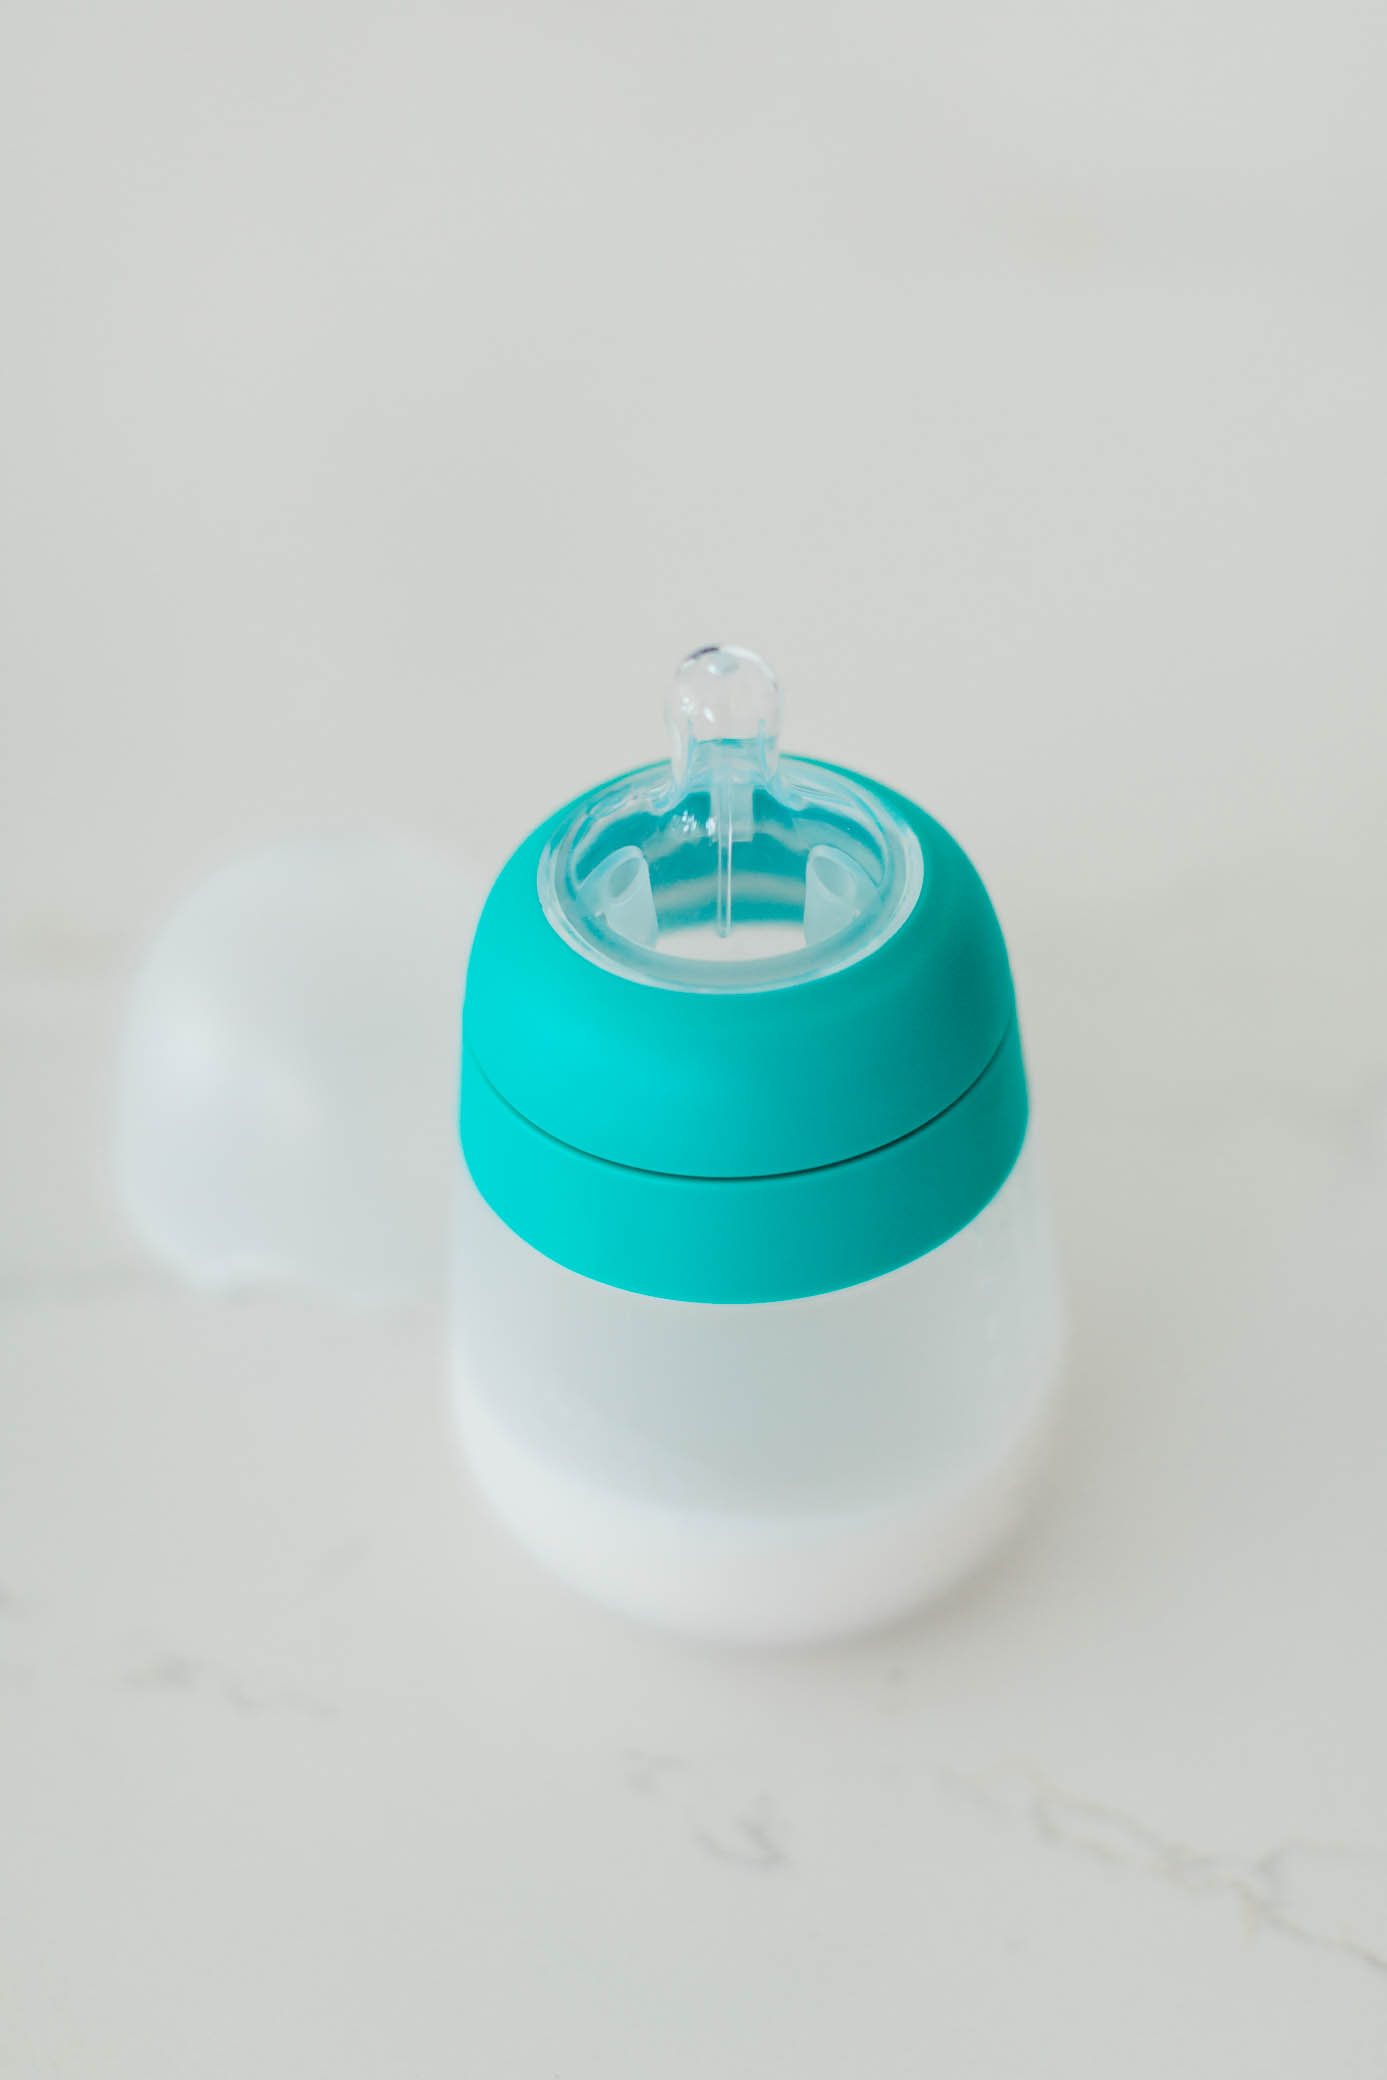 Flexy Baby bottles from nanobebe